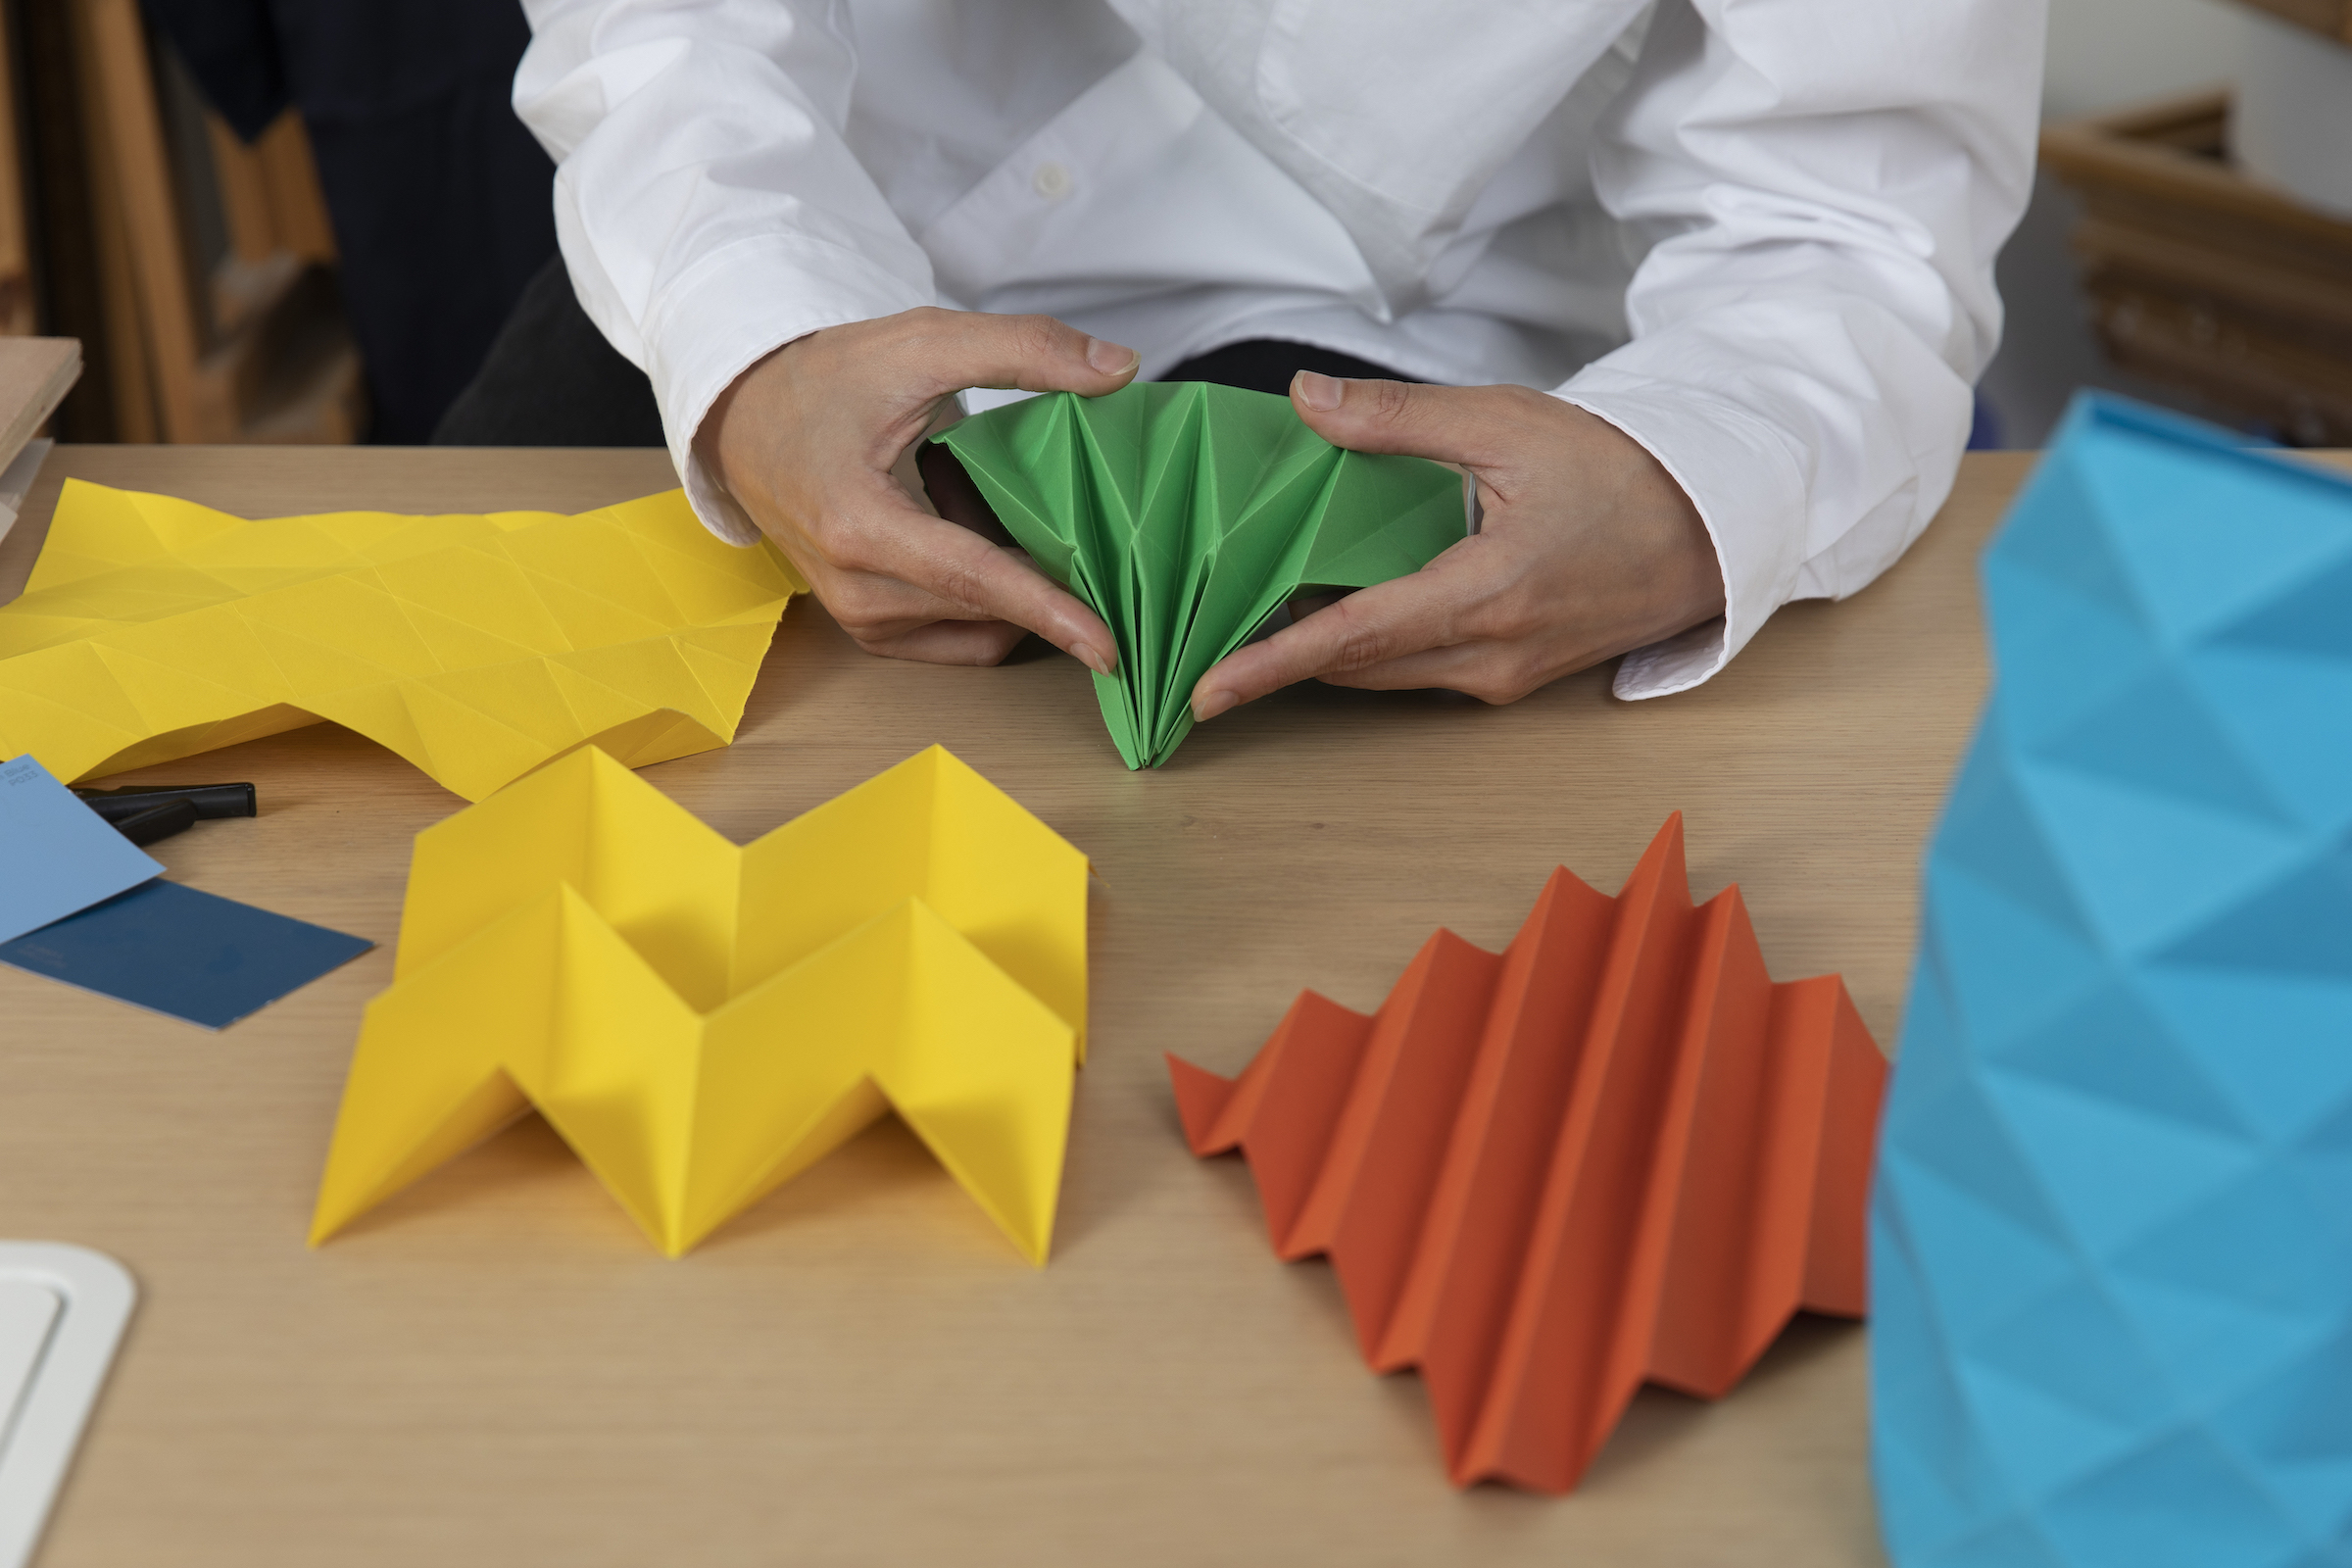 Origami models